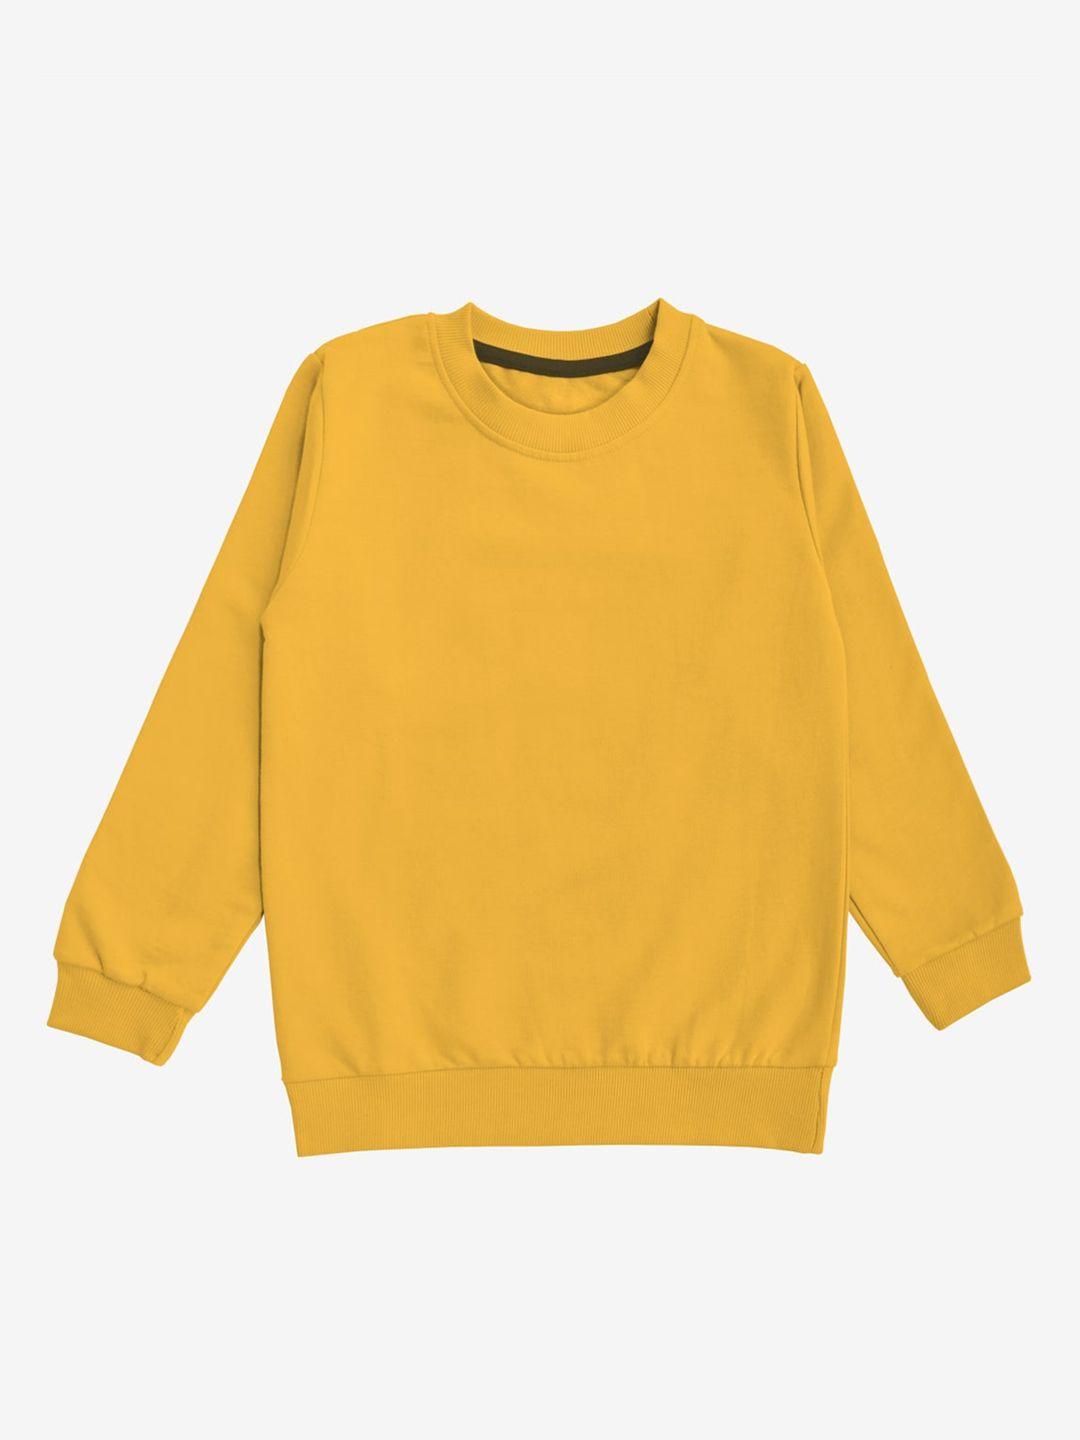 x2o unisex kids yellow sweatshirt